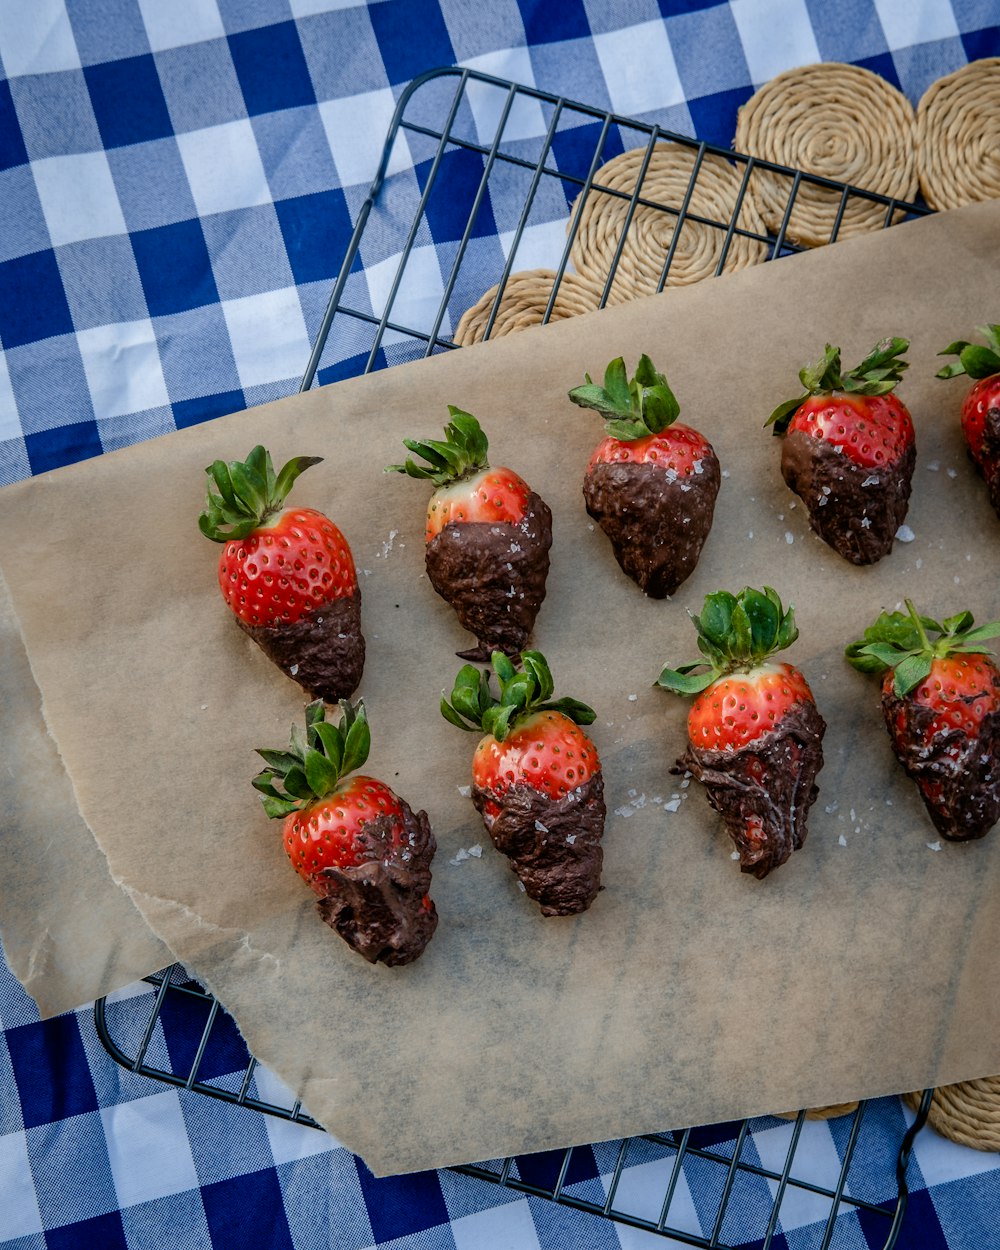 チョコレートで覆われたイチゴはペーパータオルの上に配置されています